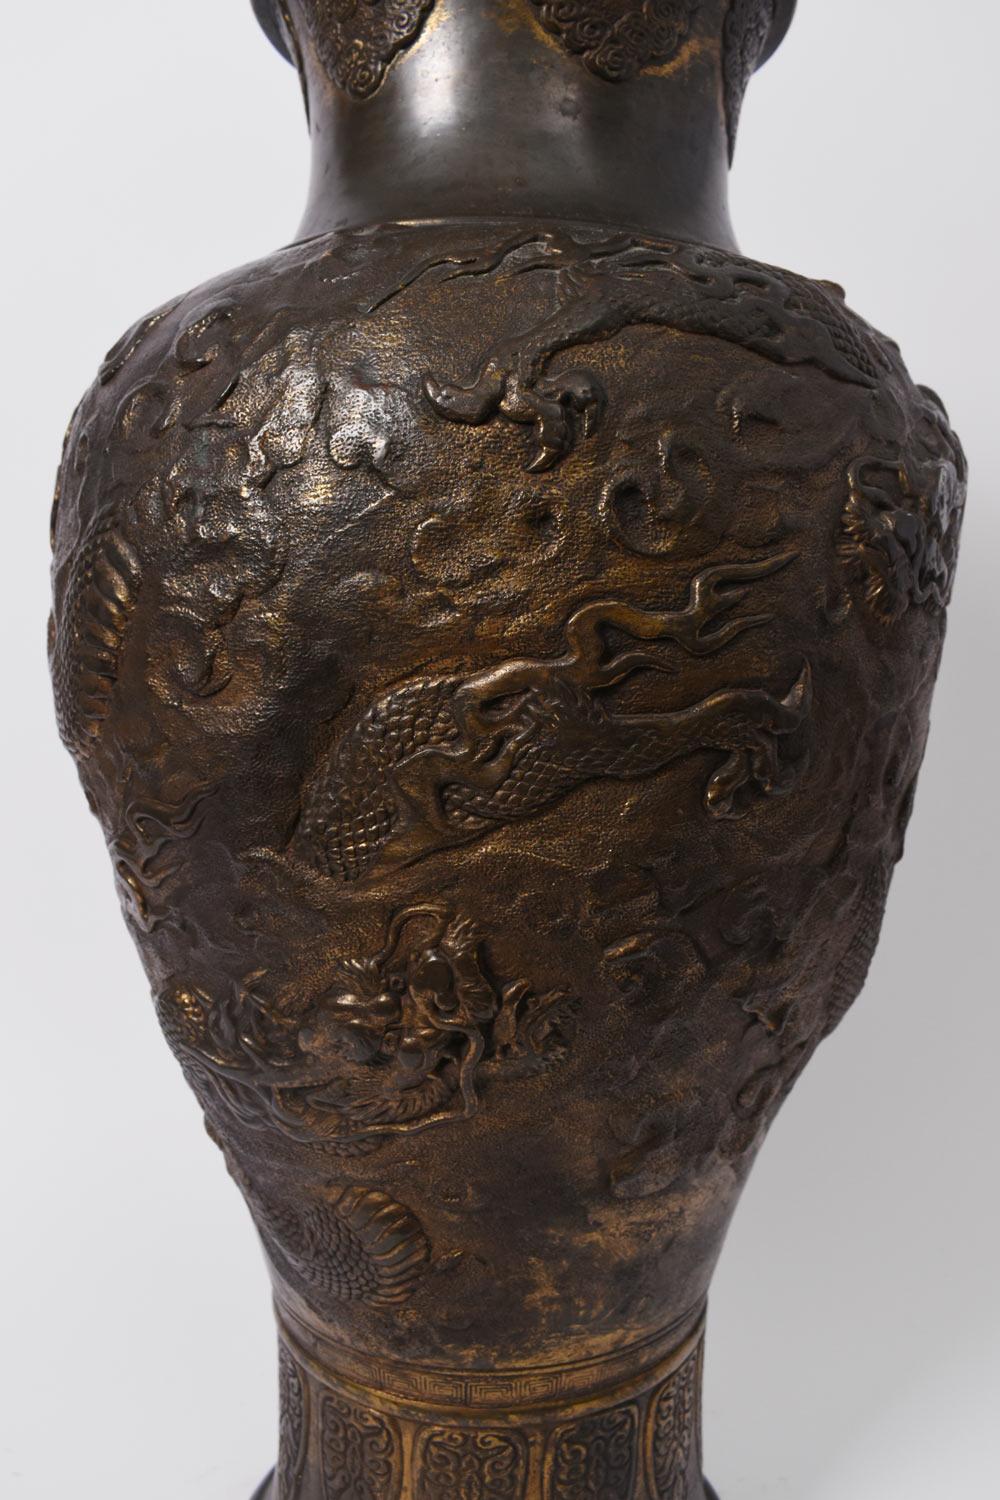 Grand vase balustre à feuille de cuivre sur âme en céramique, décoré en repoussé de deux dragons traversant les nuages, le pourtour de la base et l'ouverture décorés de cigales stylisées.
Japon, années 1920.